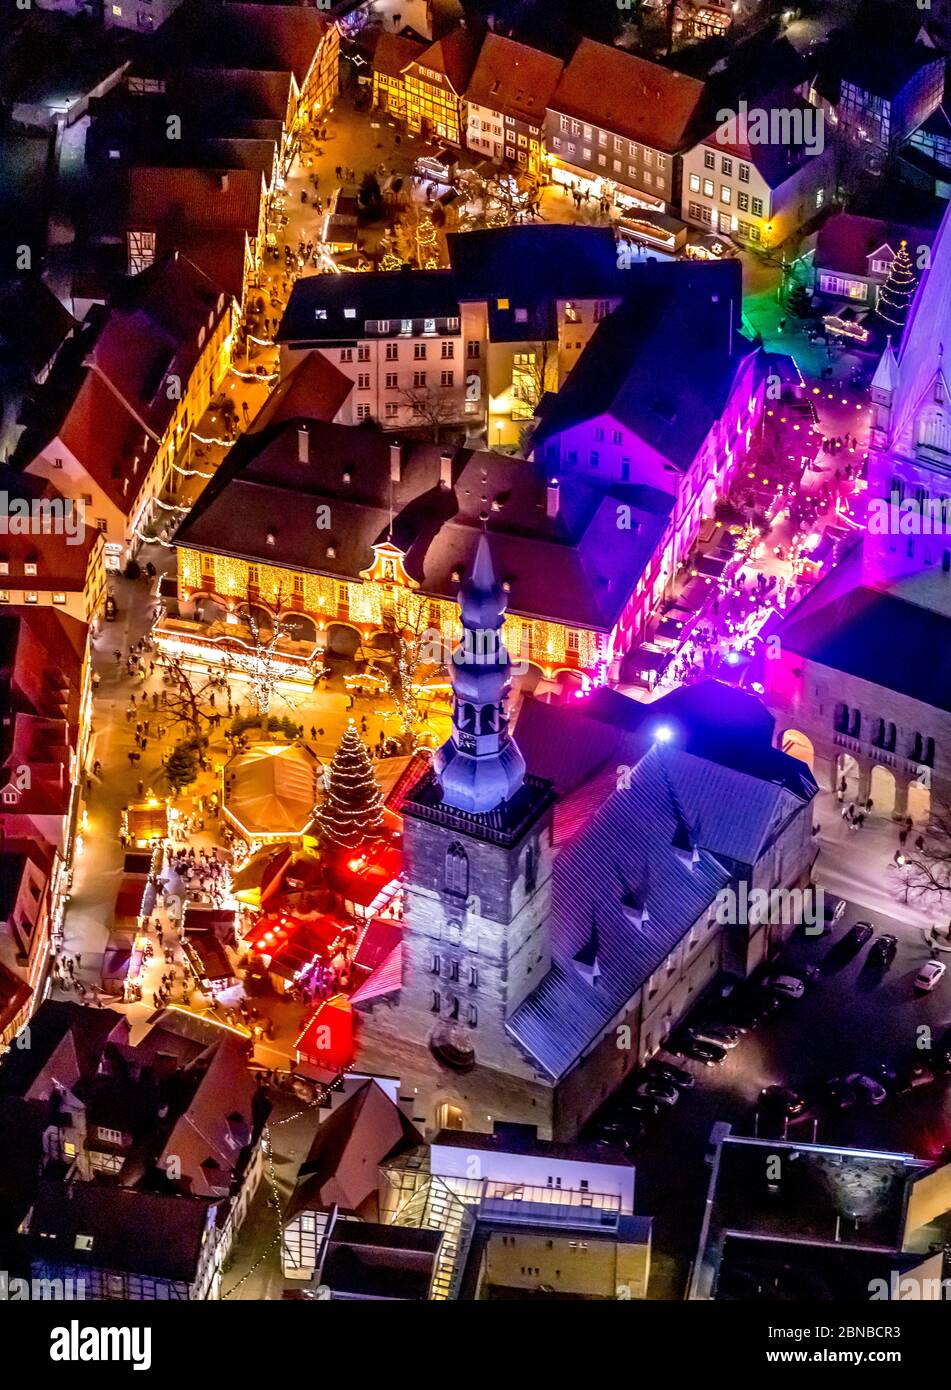 Weihnachtsmarkt in Soest mit bunt beleuchtetem Chuch St. Petri (Alde Kerke), 17.12.2019, Luftbild, Deutschland, Nordrhein-Westfalen, Soest Stockfoto